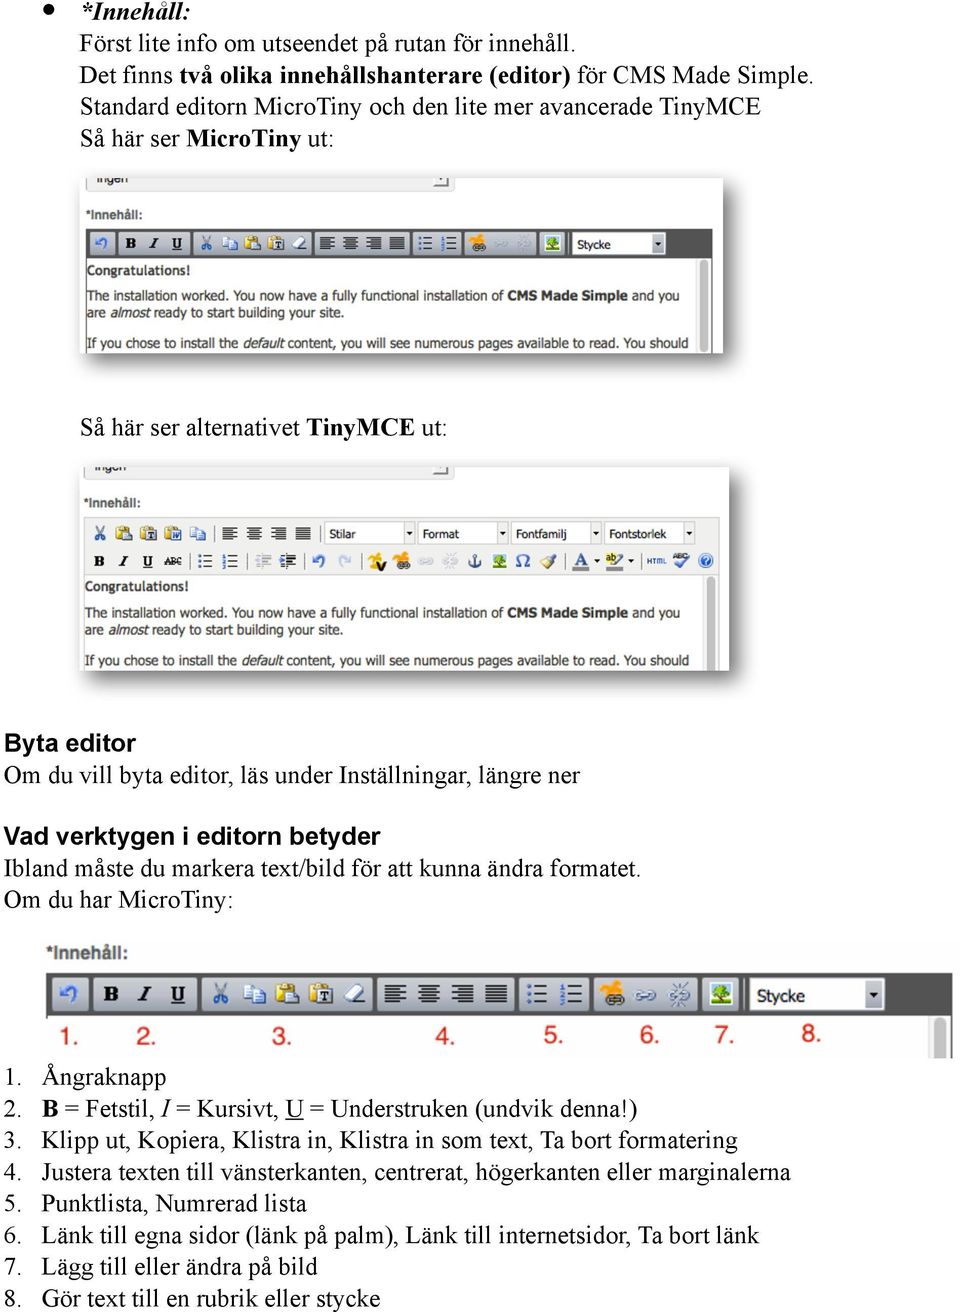 verktygen i editorn betyder Ibland måste du markera text/bild för att kunna ändra formatet. Om du har MicroTiny: 1. Ångraknapp 2. B = Fetstil, I = Kursivt, U = Understruken (undvik denna) 3.